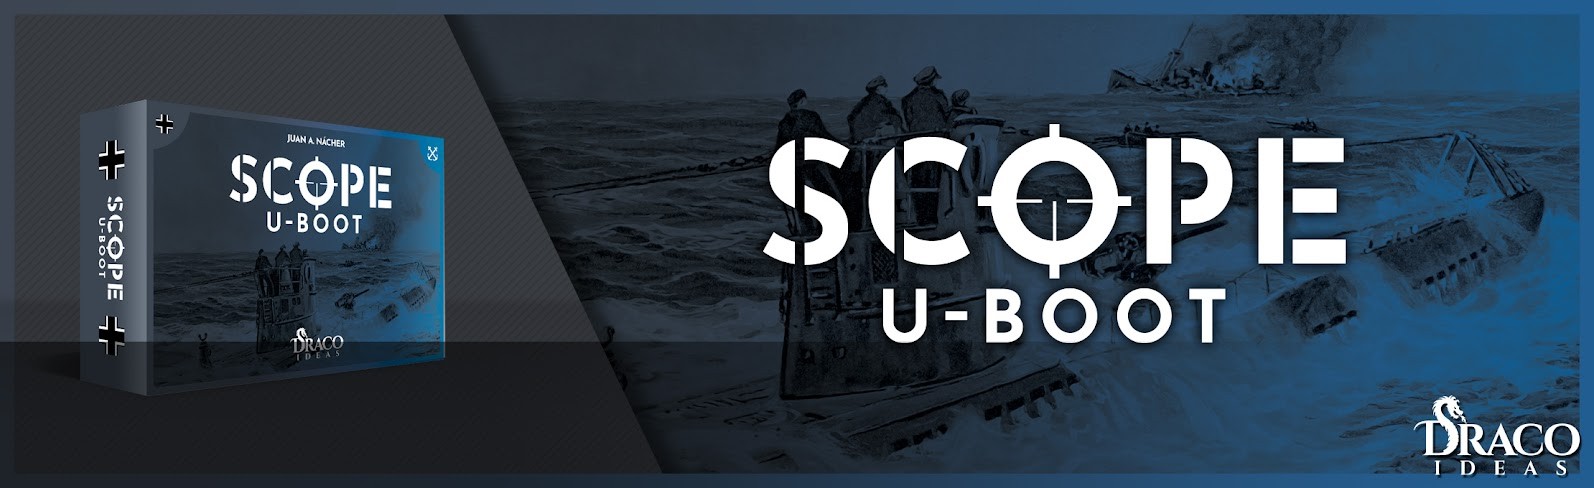 Scope U-boot